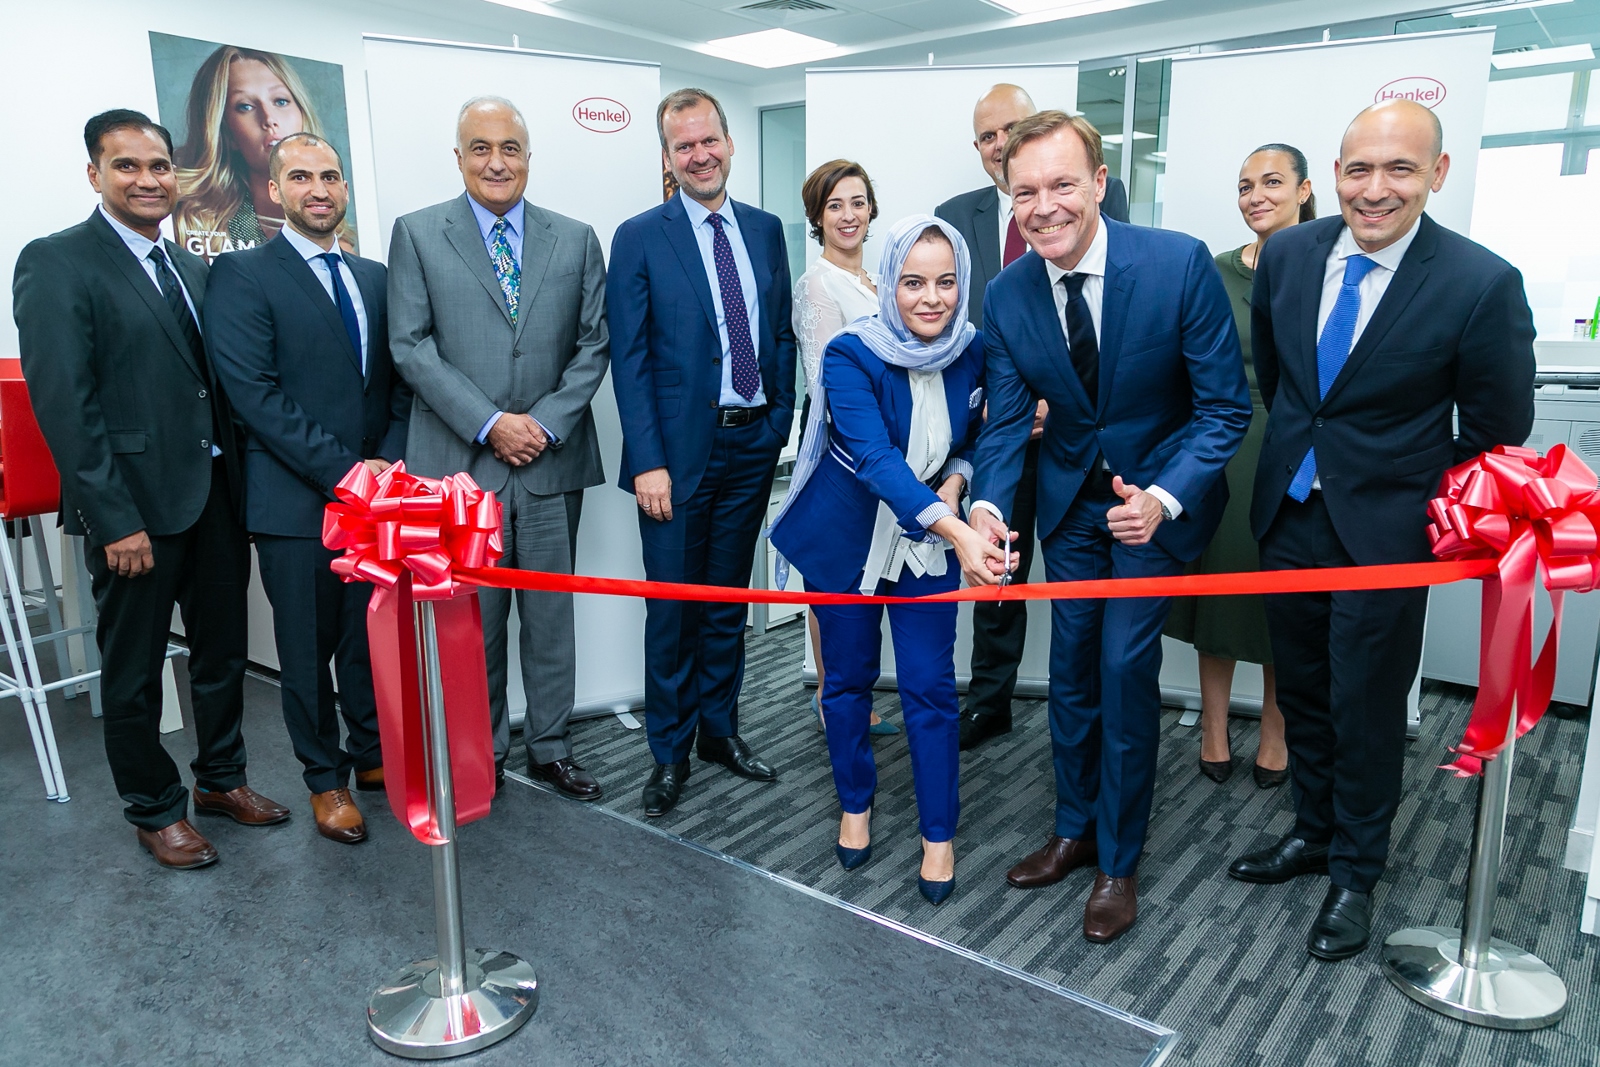 افتتاح مختبر شركة هنكل للعناية بالجمال في دبي